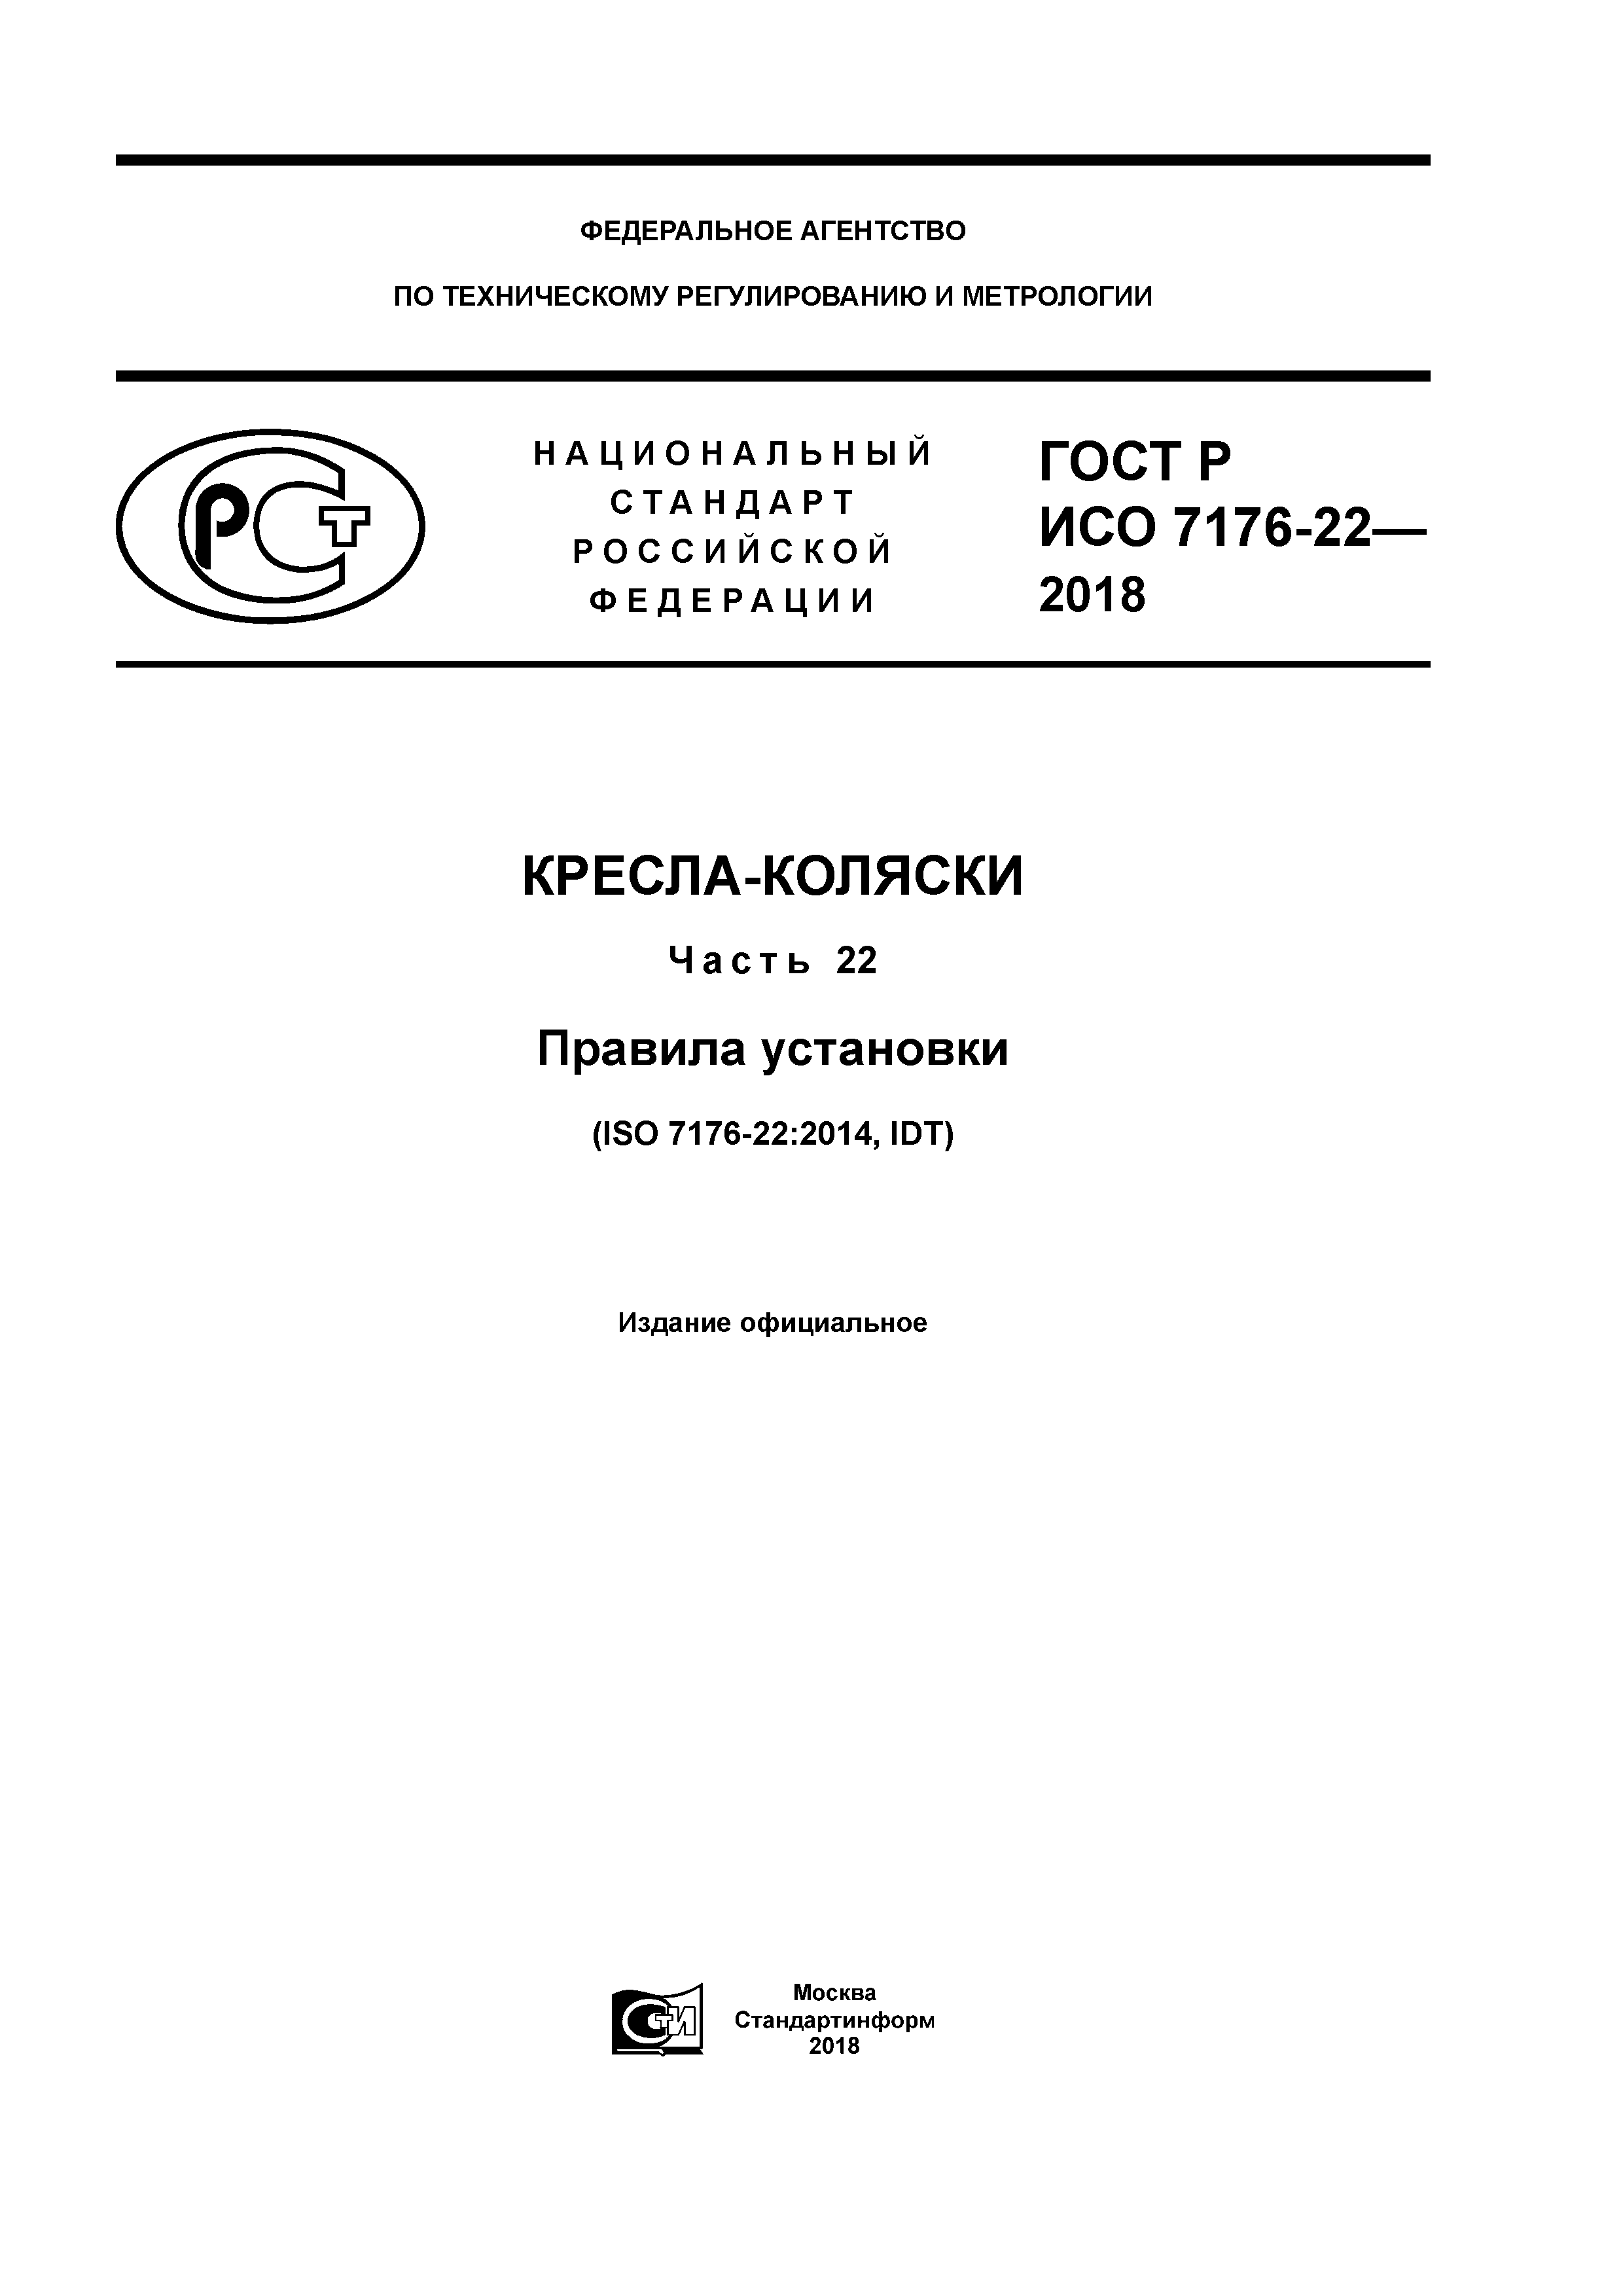 ГОСТ Р ИСО 7176-22-2018